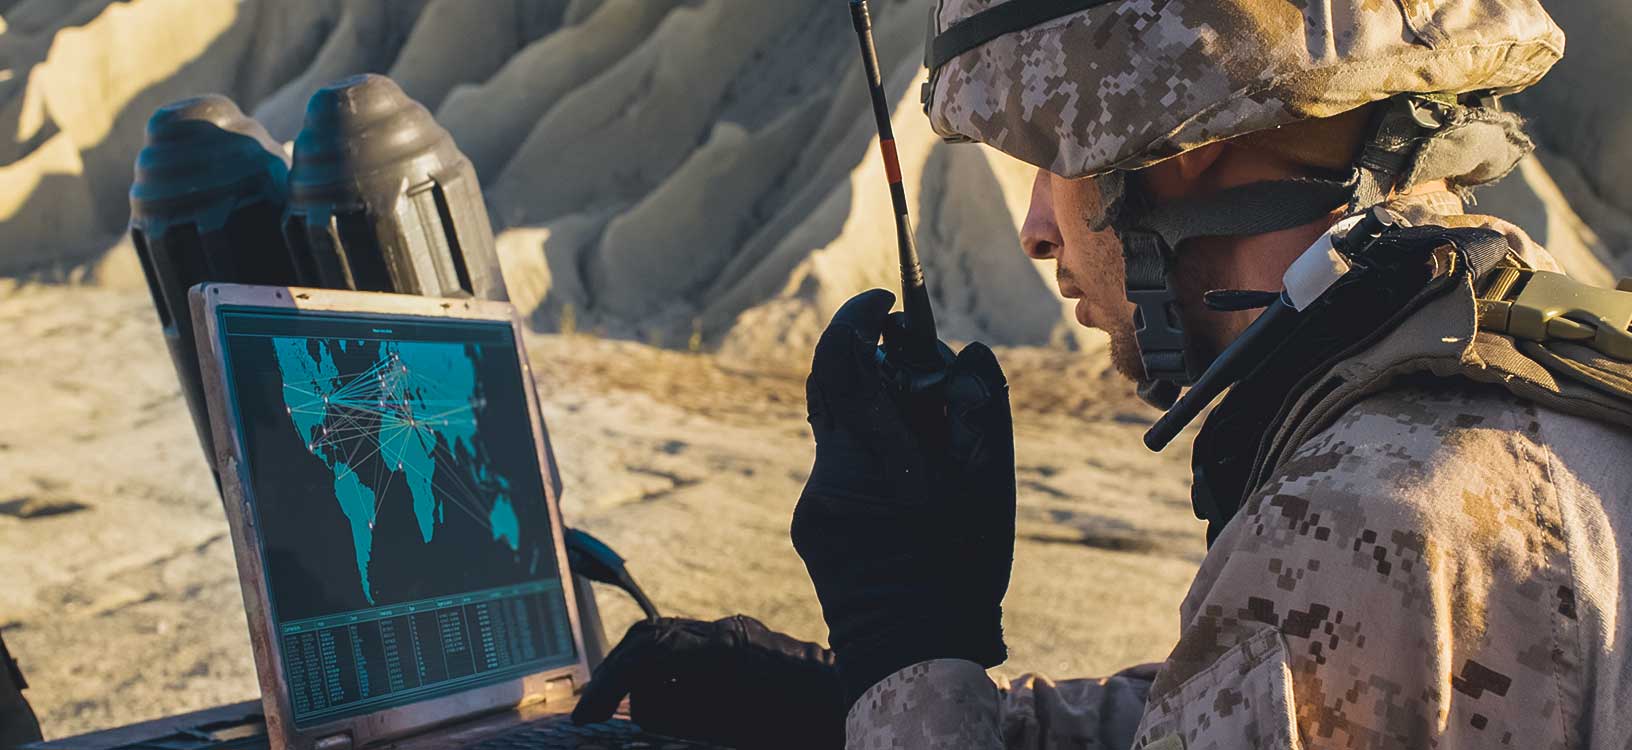 Solday utilisant un ordinateur portable et une radio pour communiquer pendant les opérations militaires dans le désert.